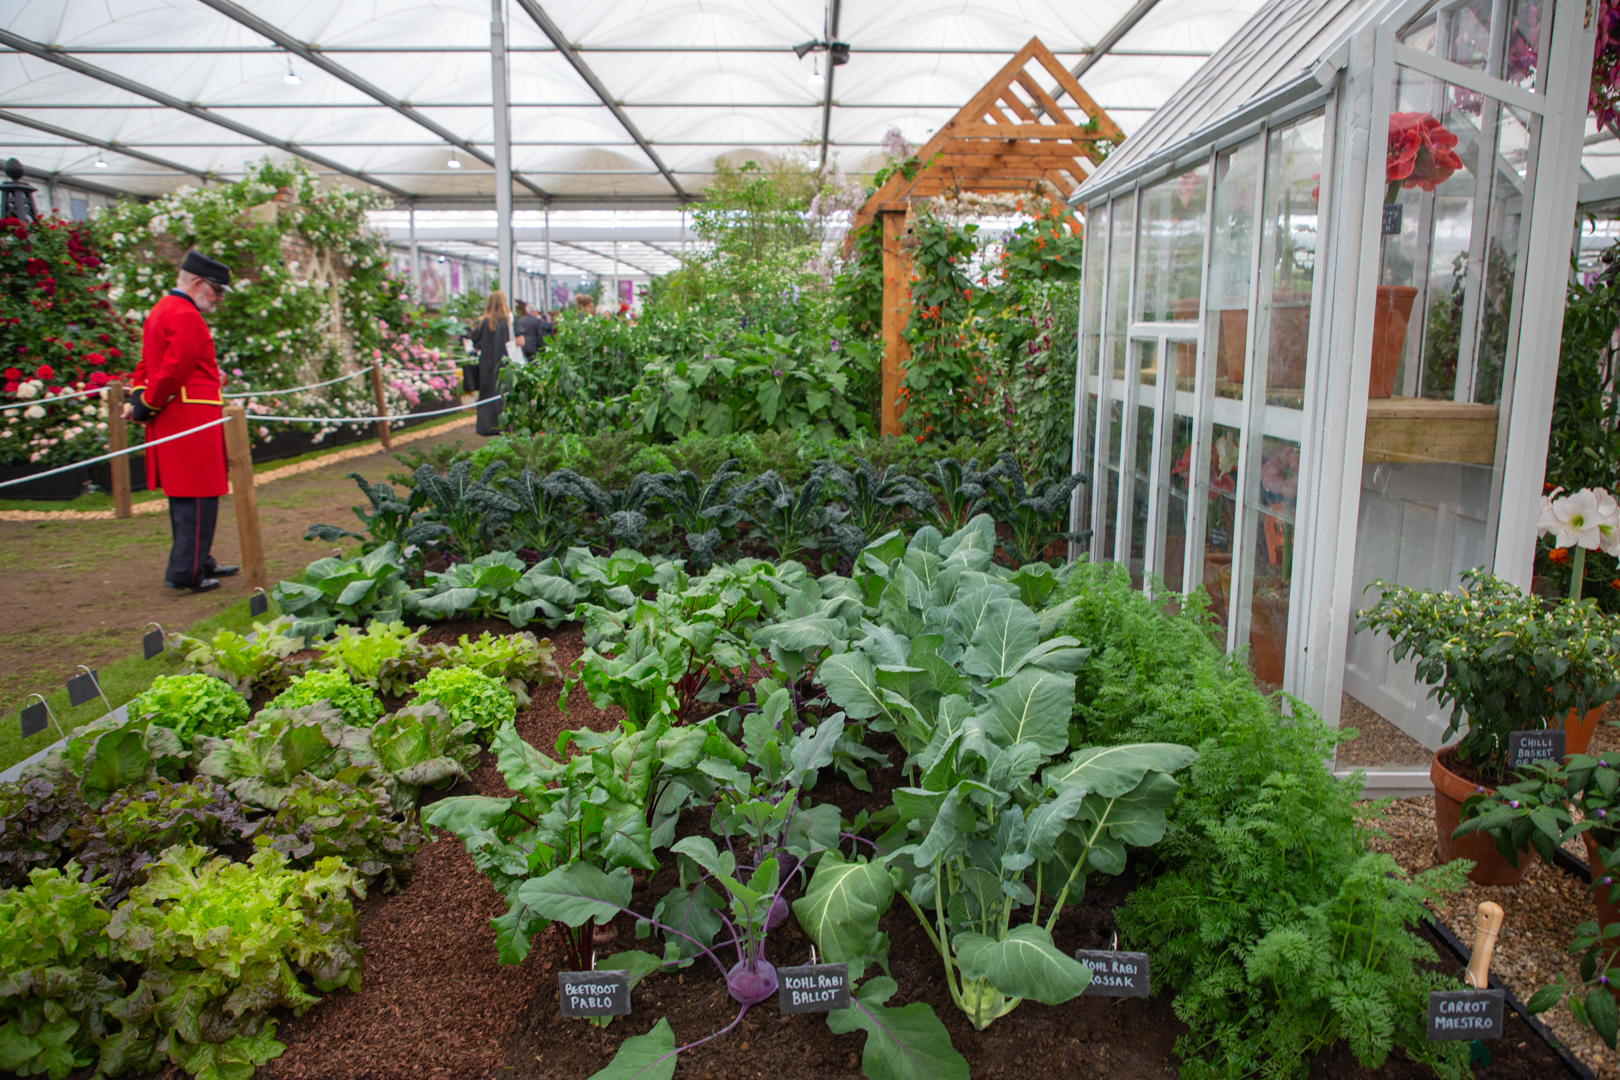 Un pensionista del Royal Hospital Chelsea contempla un jardín de huerto cultivado con una variedad de plantas, incluyendo lechugas, remolachas, zanahorias y kohlrabi.